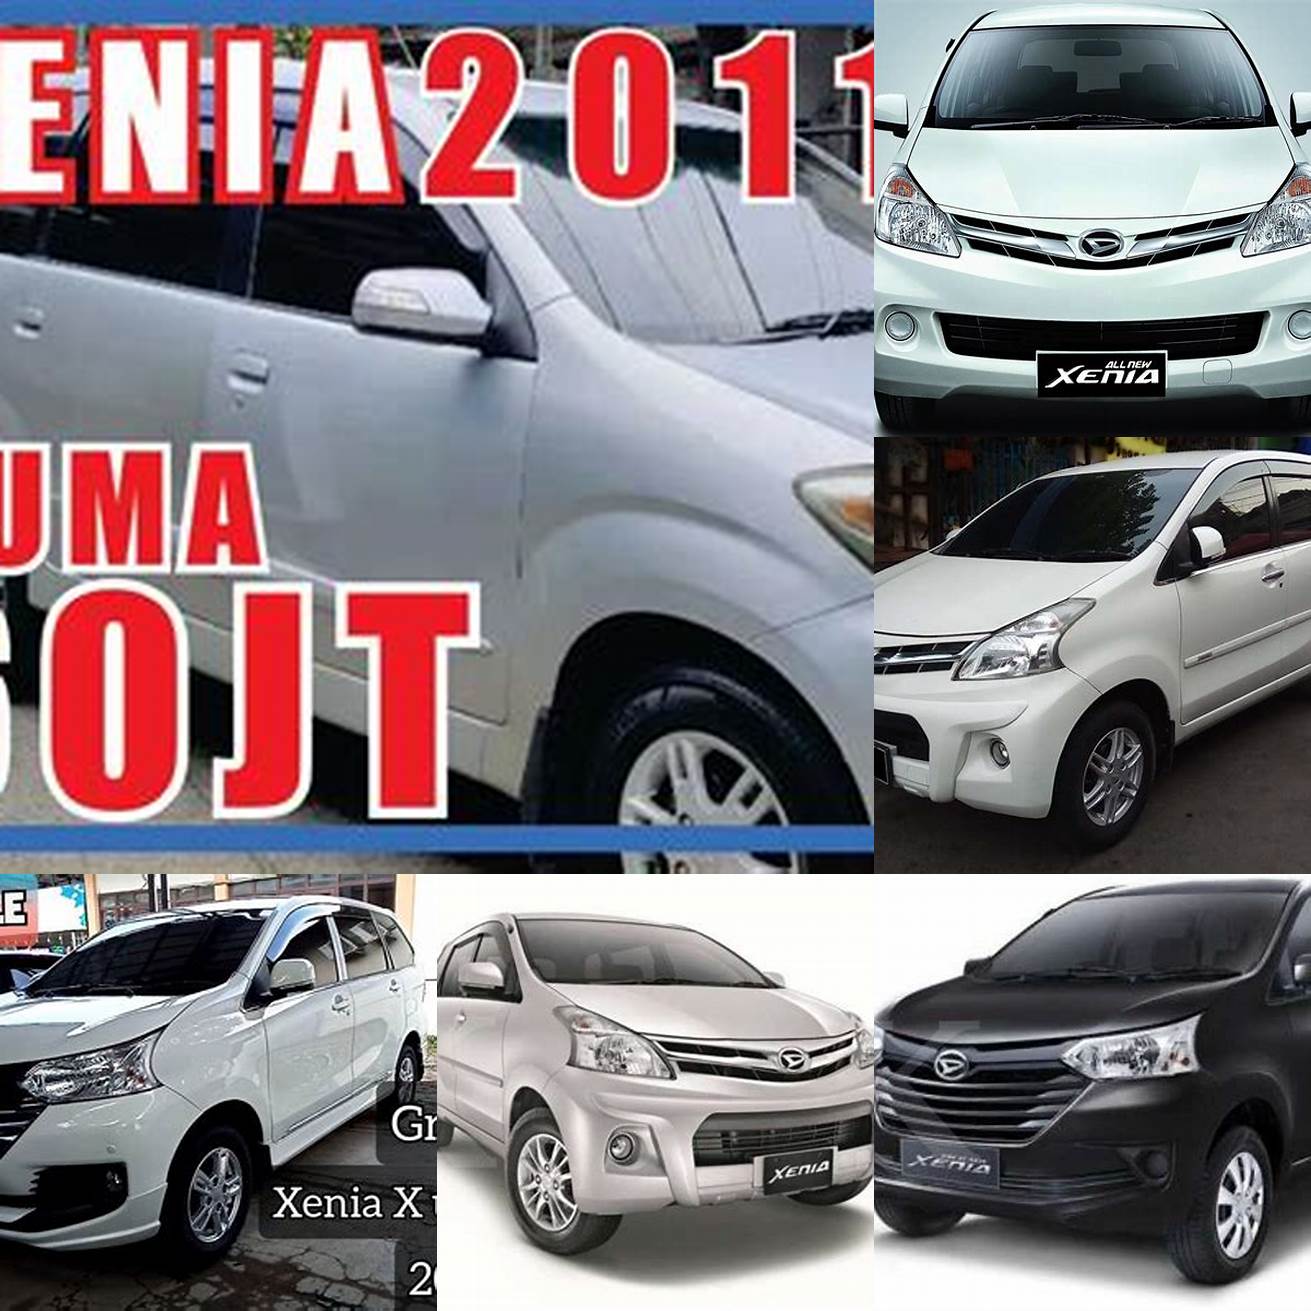 Harga mobil bekas Xenia tahun 2011-2012 berkisar antara 70-80 jutaan